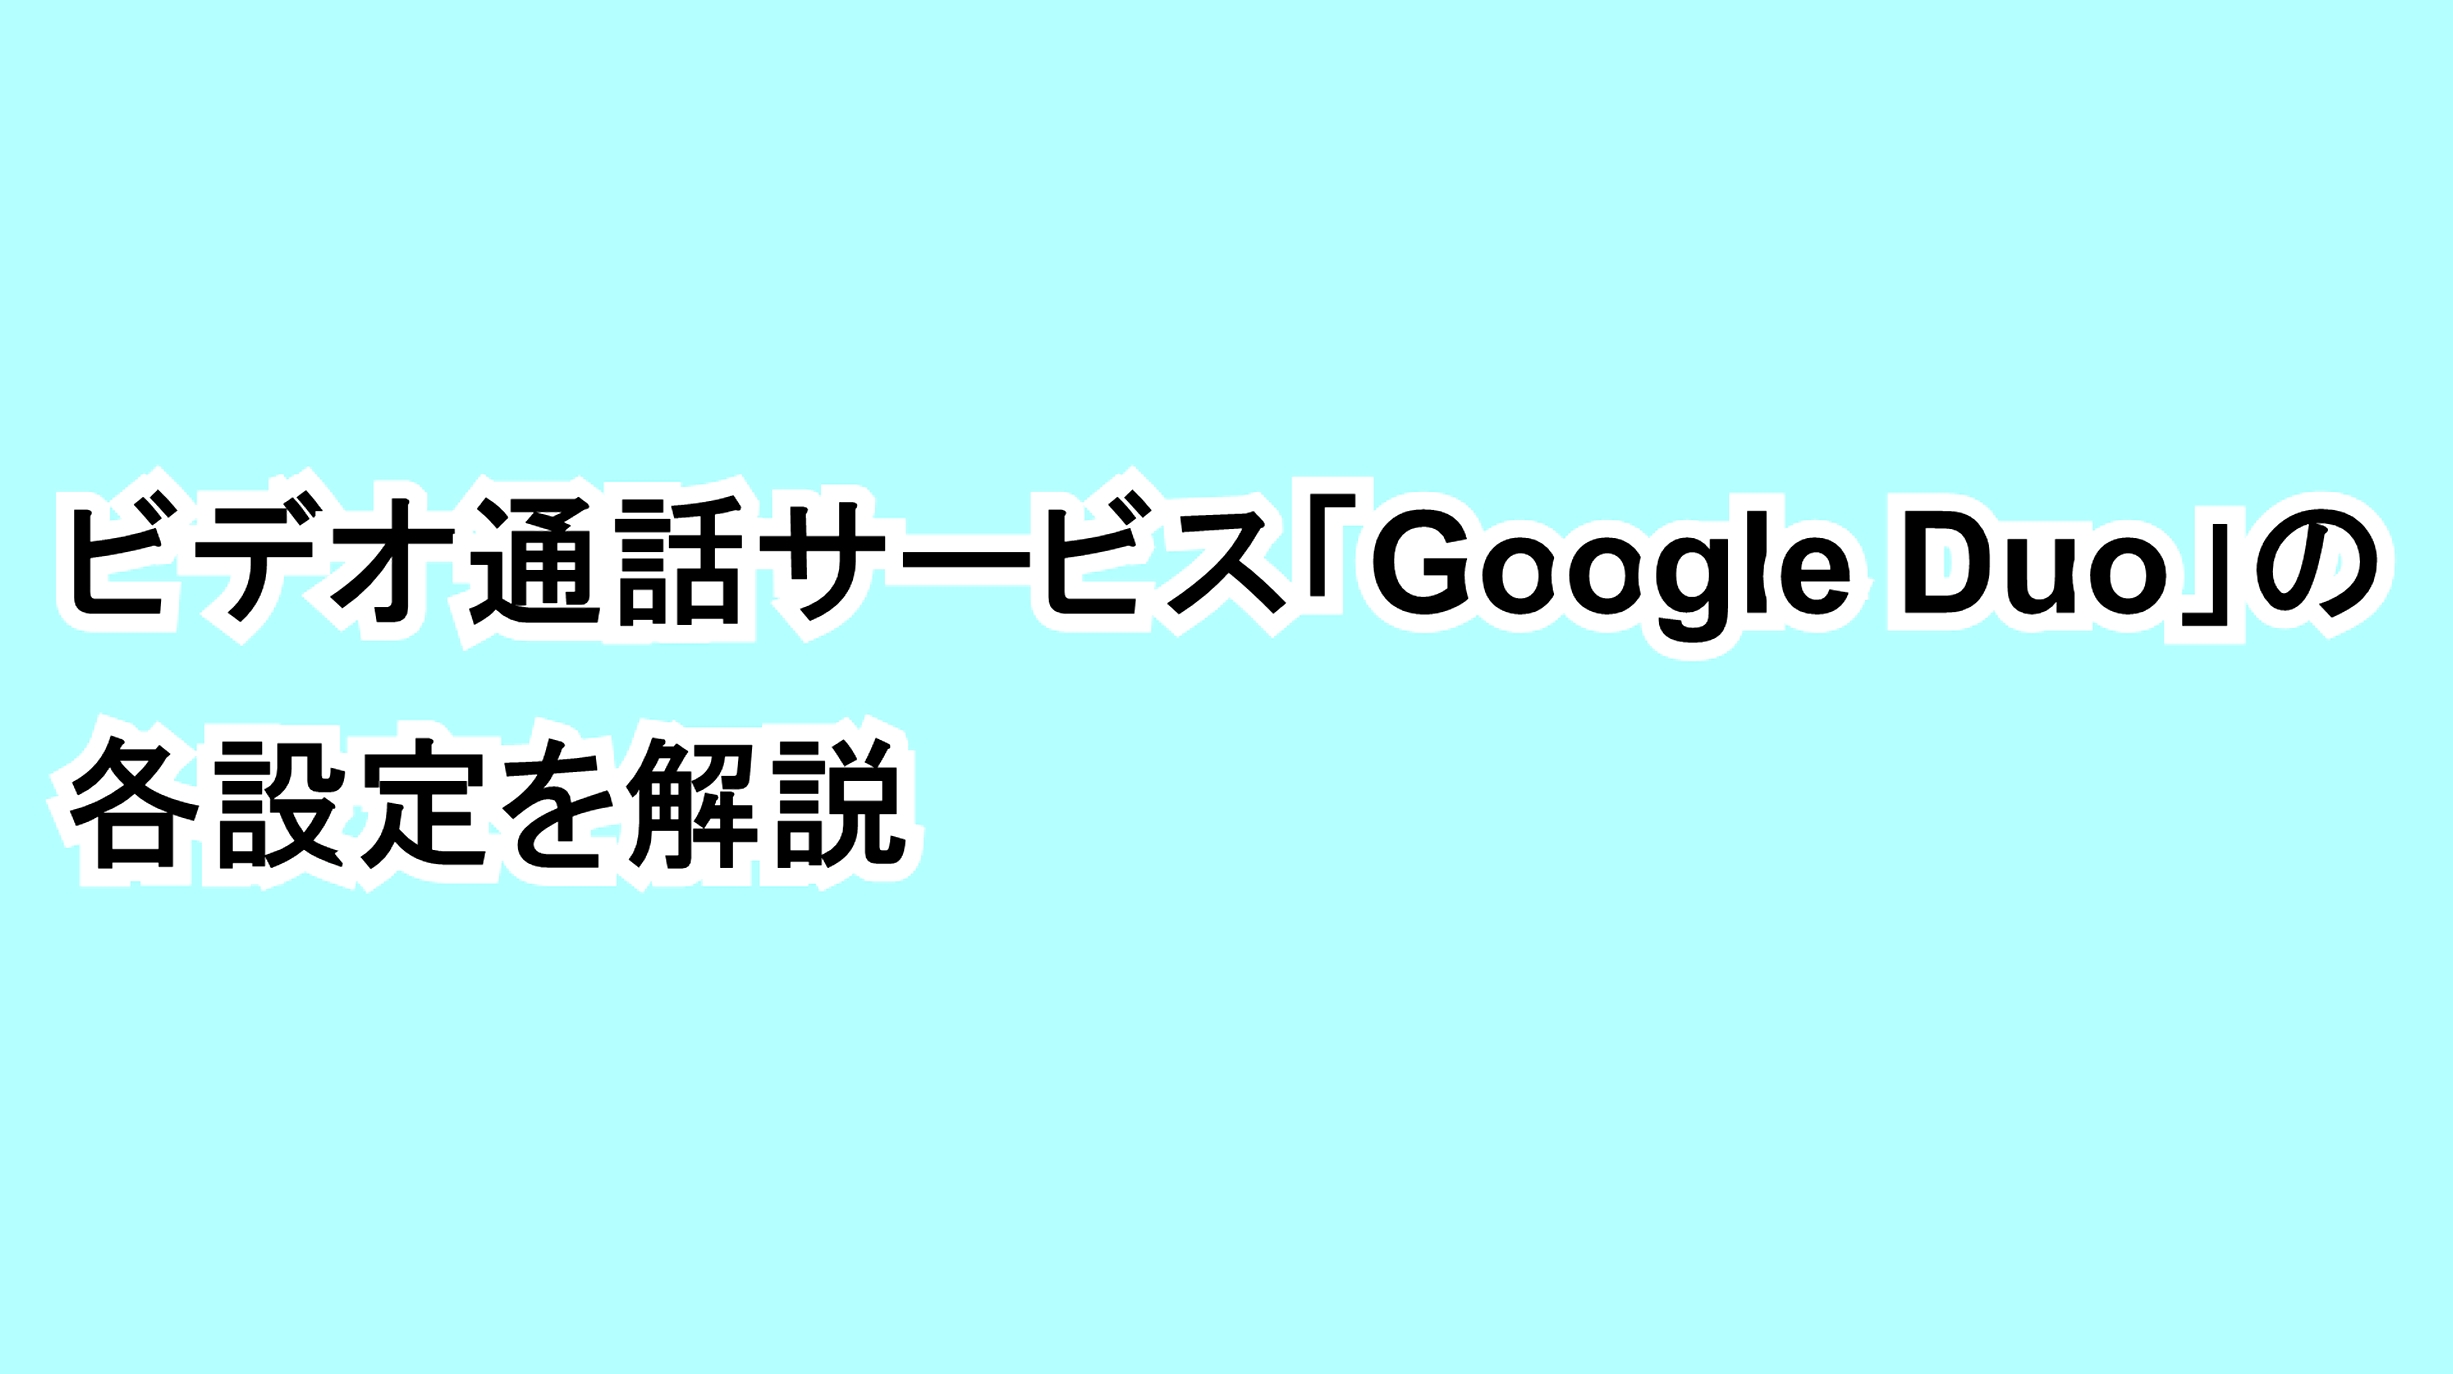 ビデオ通話サービス「Google Duo」の各設定を解説